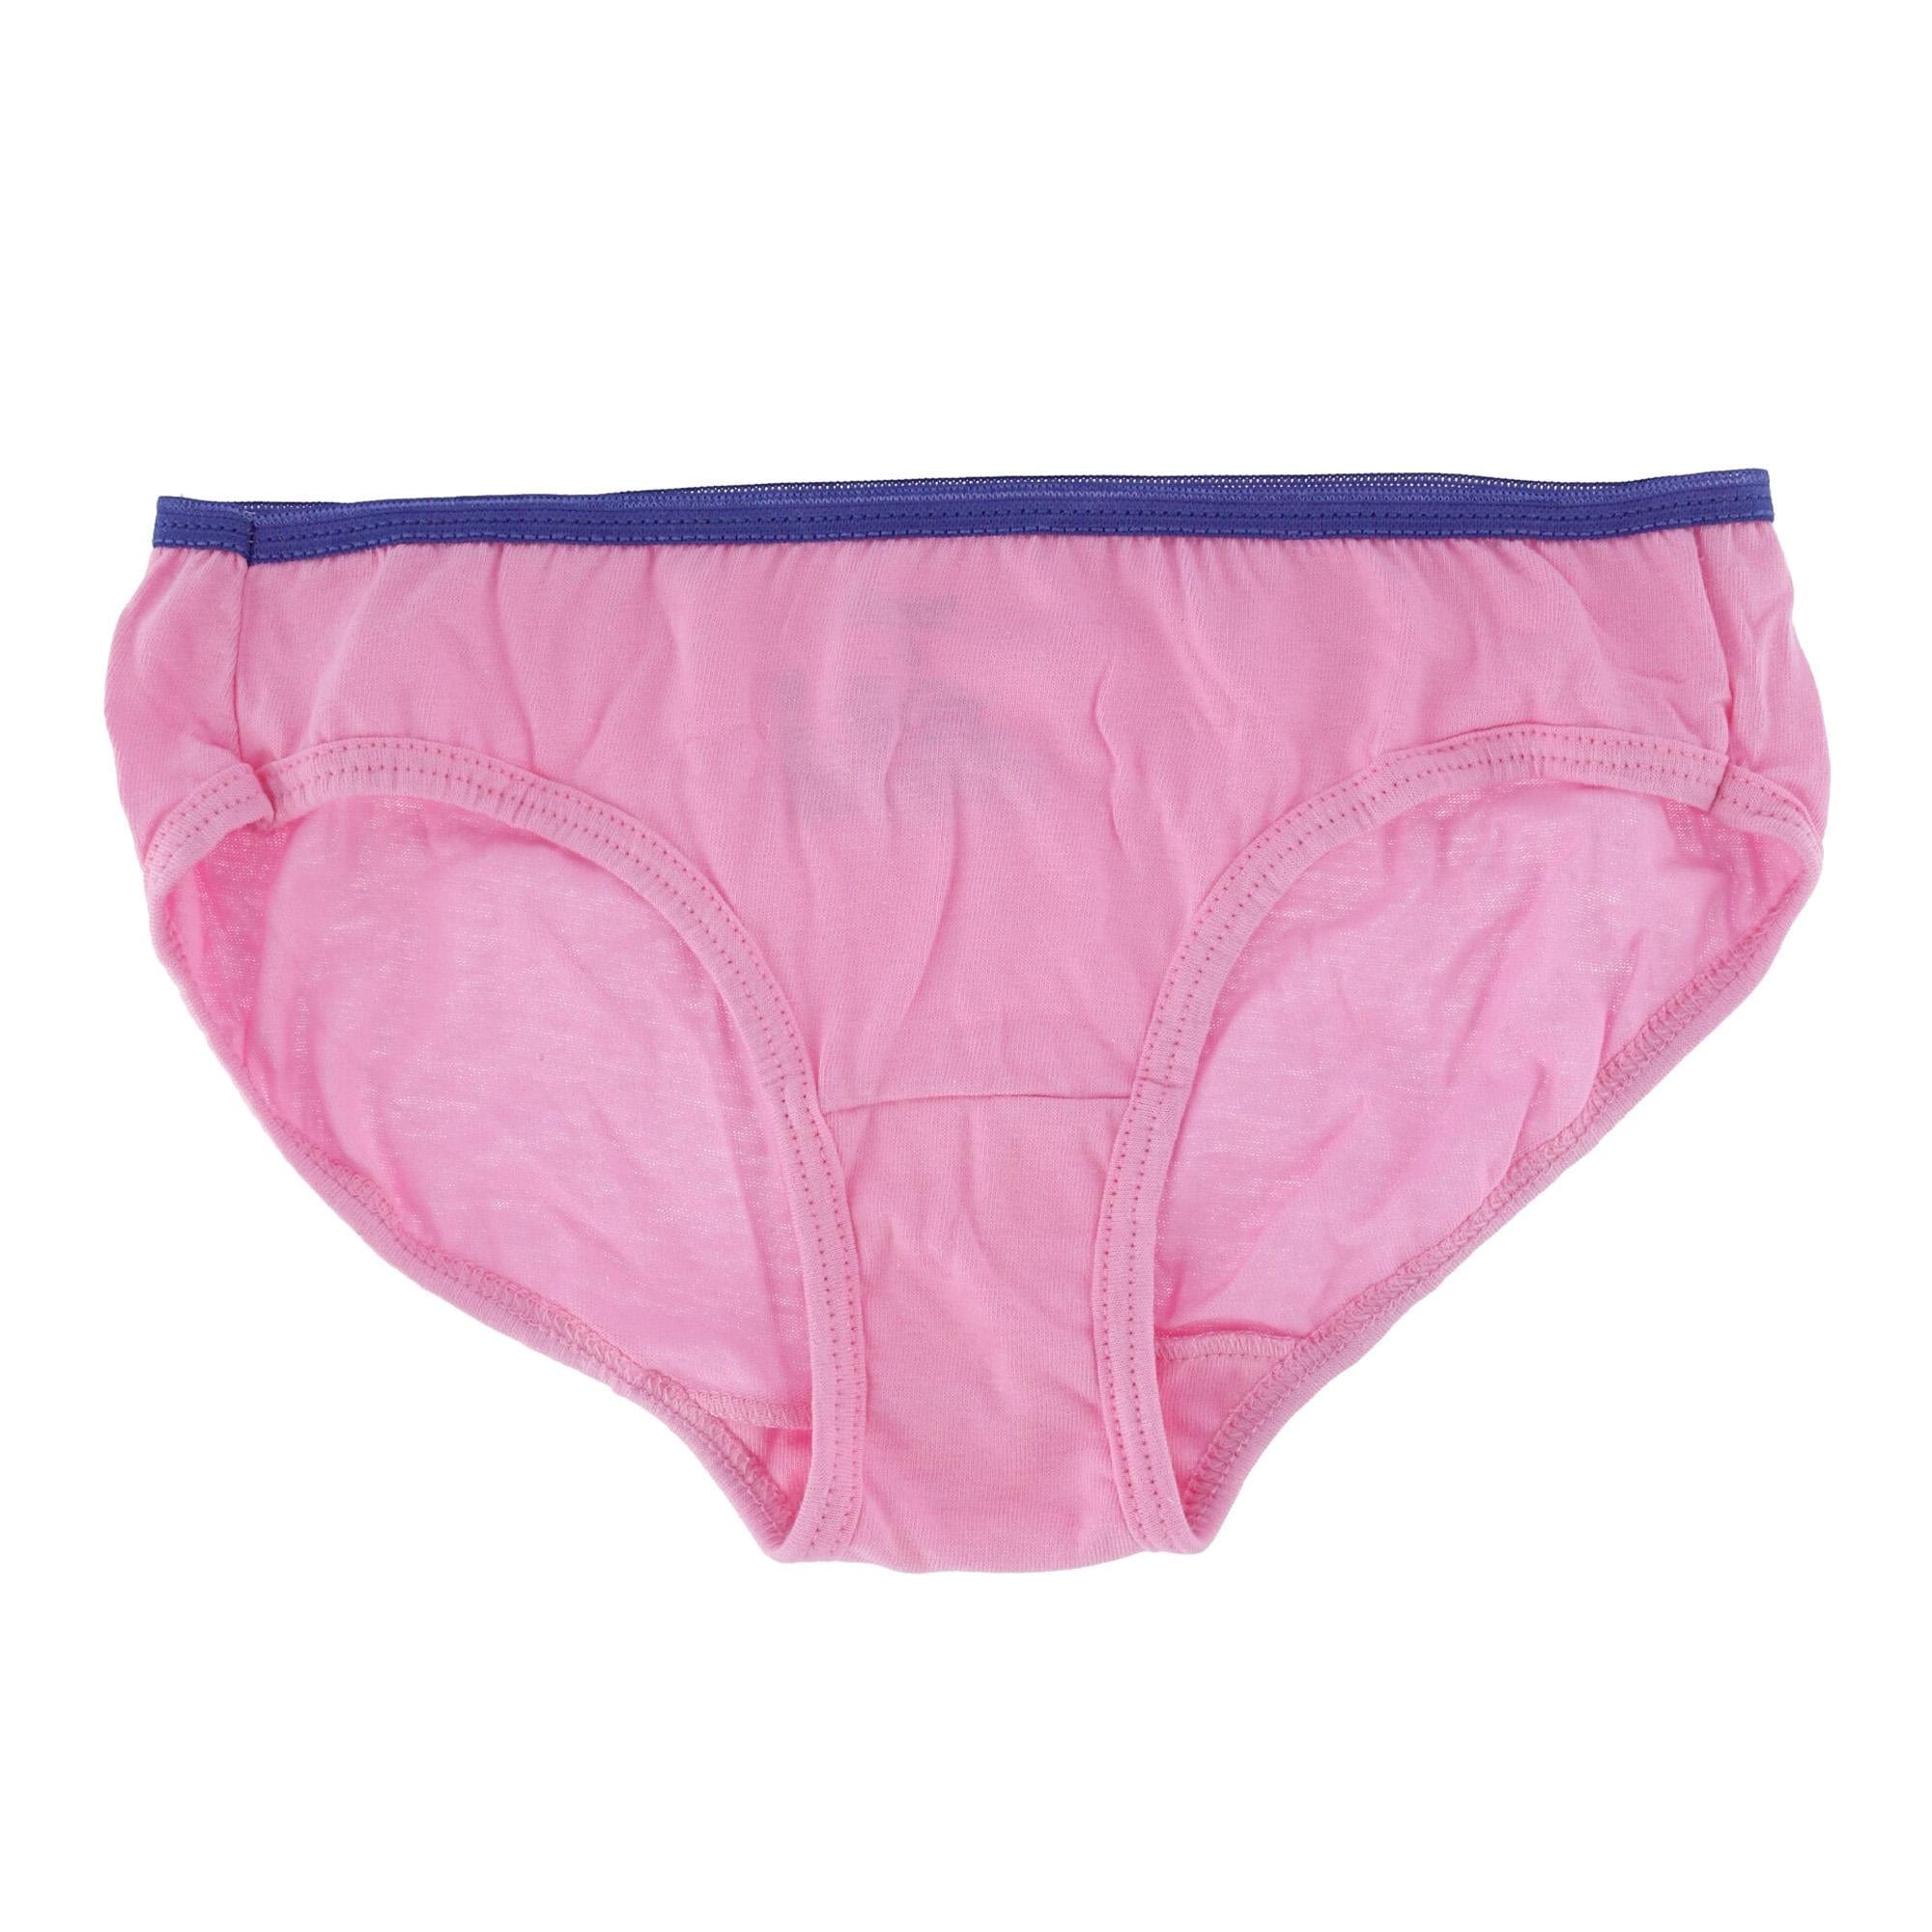 Lowest Price: Hanes Girls' Hipster Underwear Pack, Cotton Hipster  Panties, Cotton Panties, 10-Pack